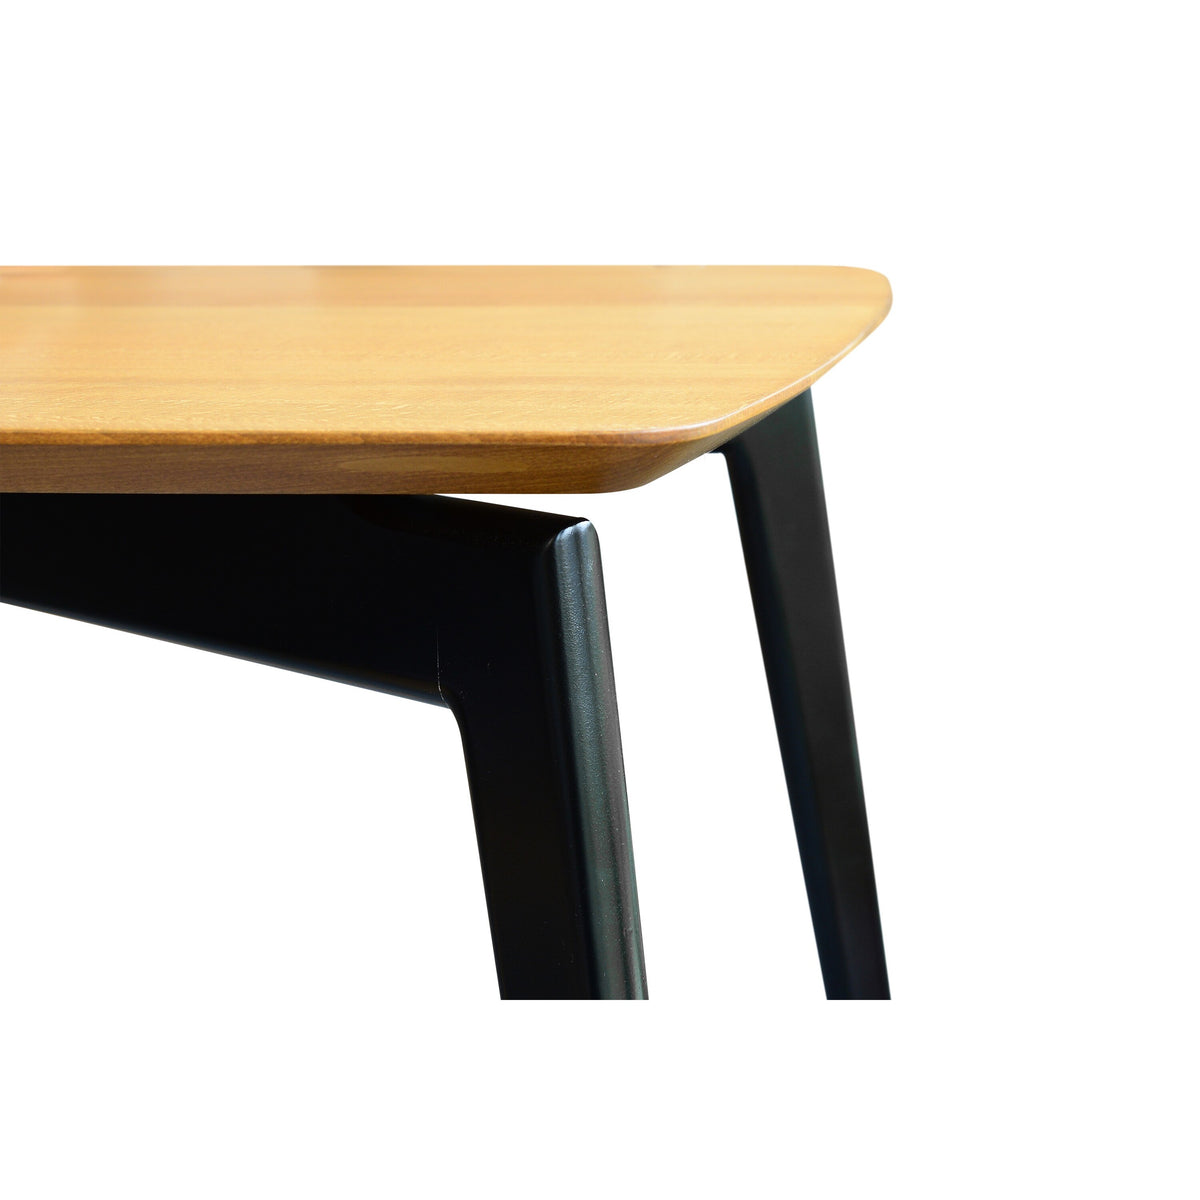 Jedálenský stôl Ronin (buk, čierna)